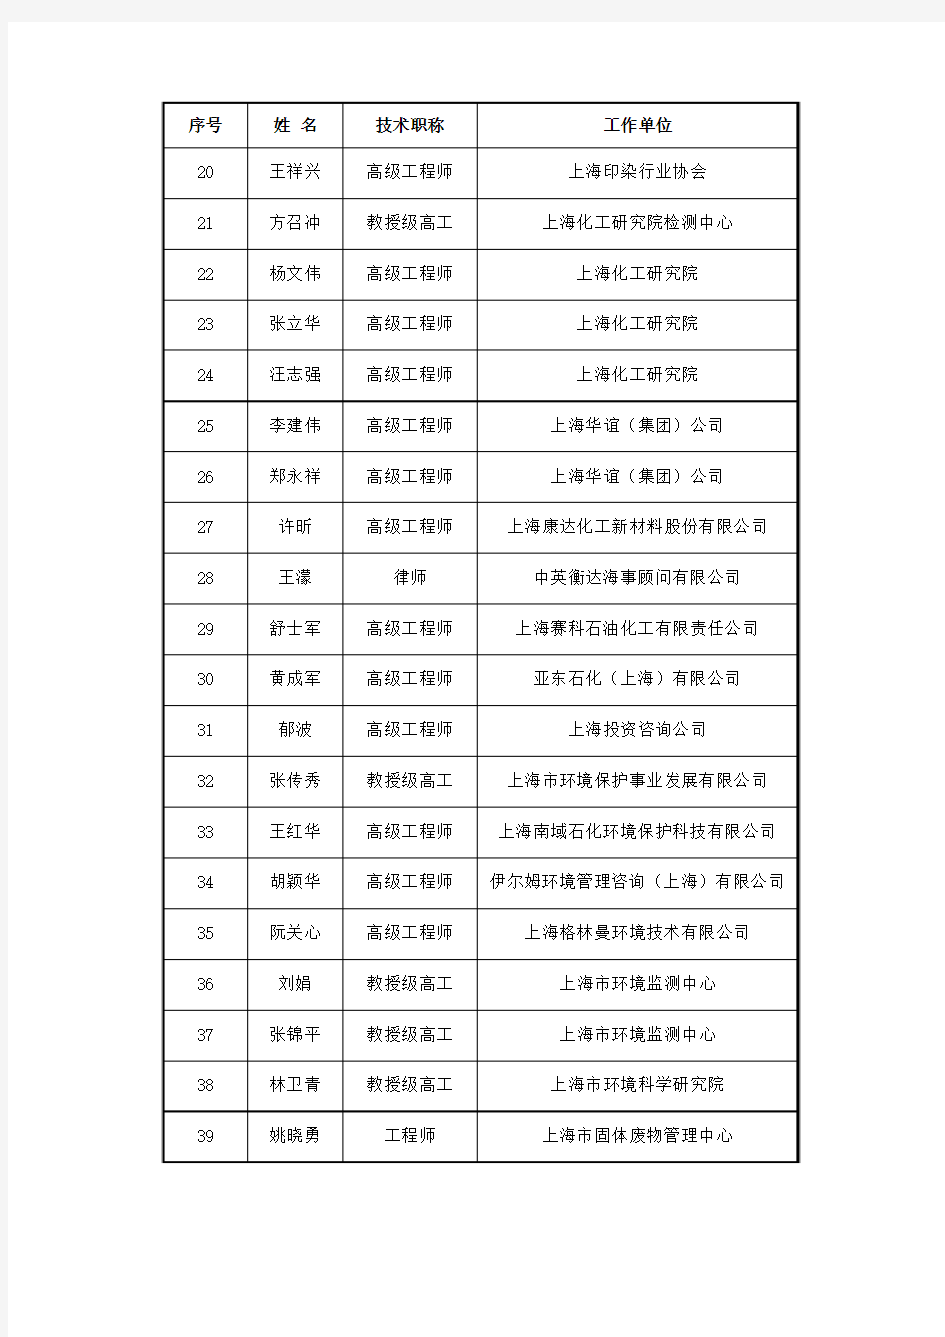 上海市环境应急专家库专家名单(第一批)